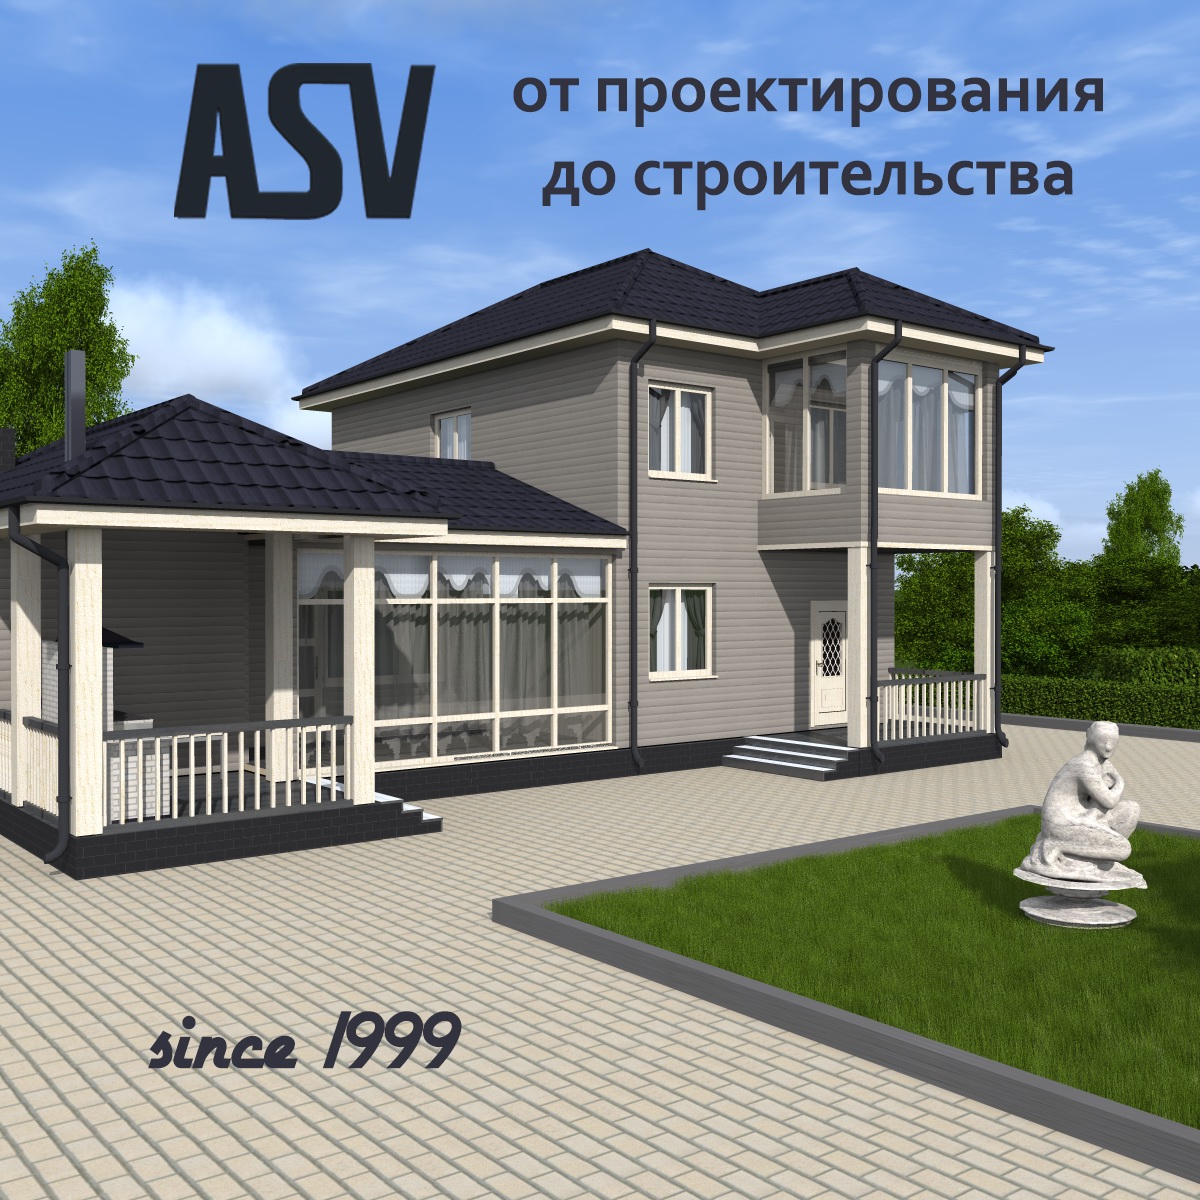 кредиты на строительство дома иркутск